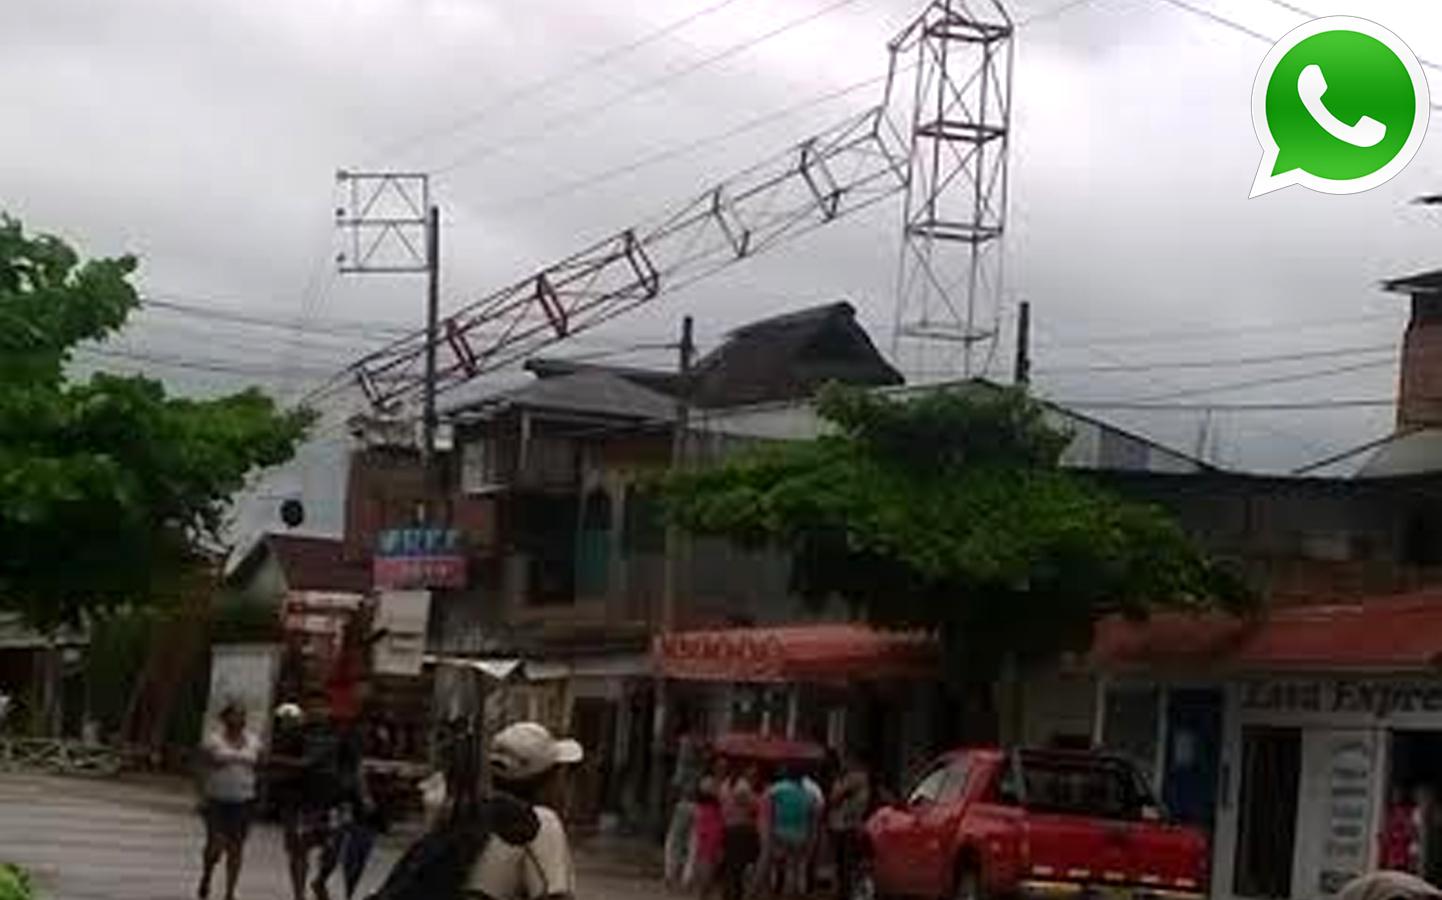 Vía WhatsApp: antena de televisión se desplomó en Ucayali - 1